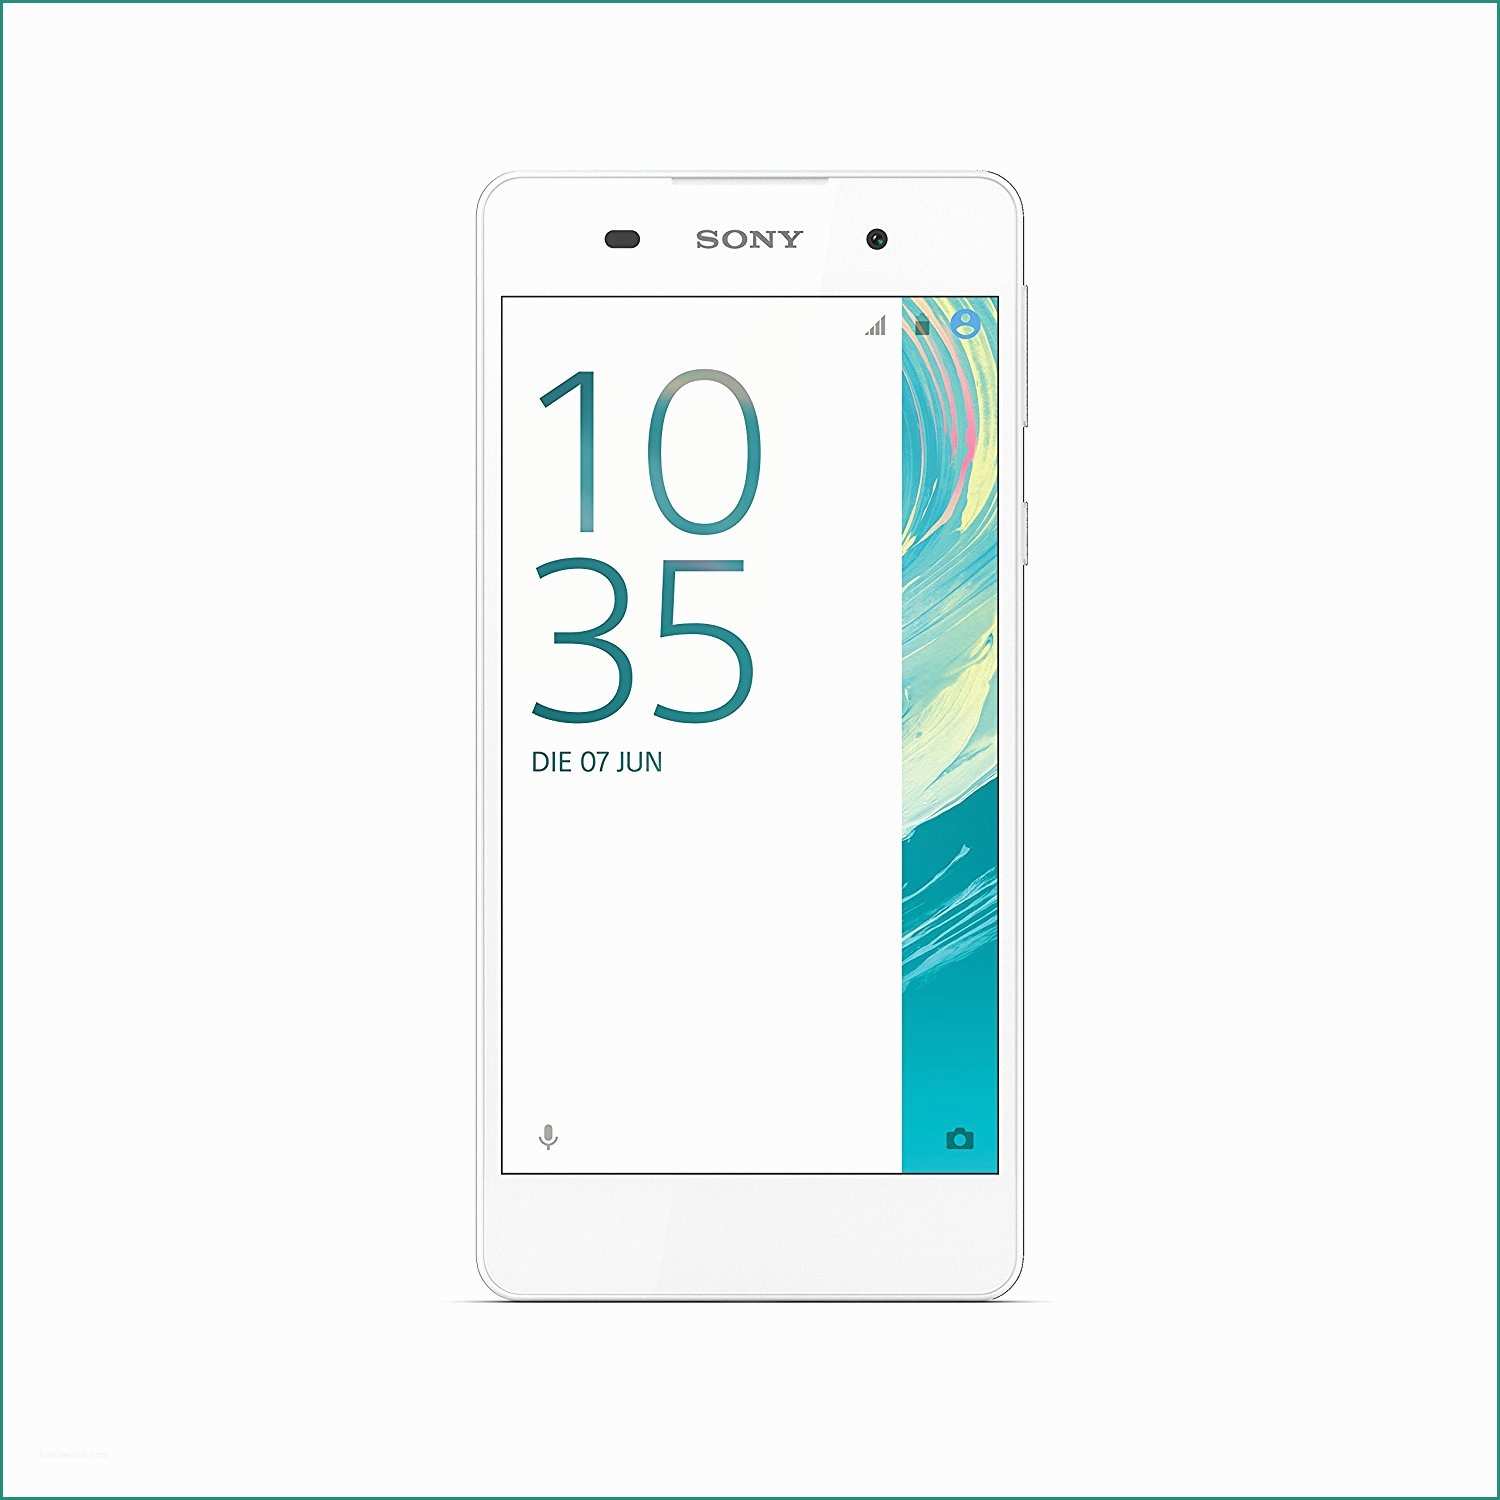 Prezzo Rame Usato Al Kg E sony Xperia E5 Smartphone 5 Zoll Weiß Amazon Elektronik